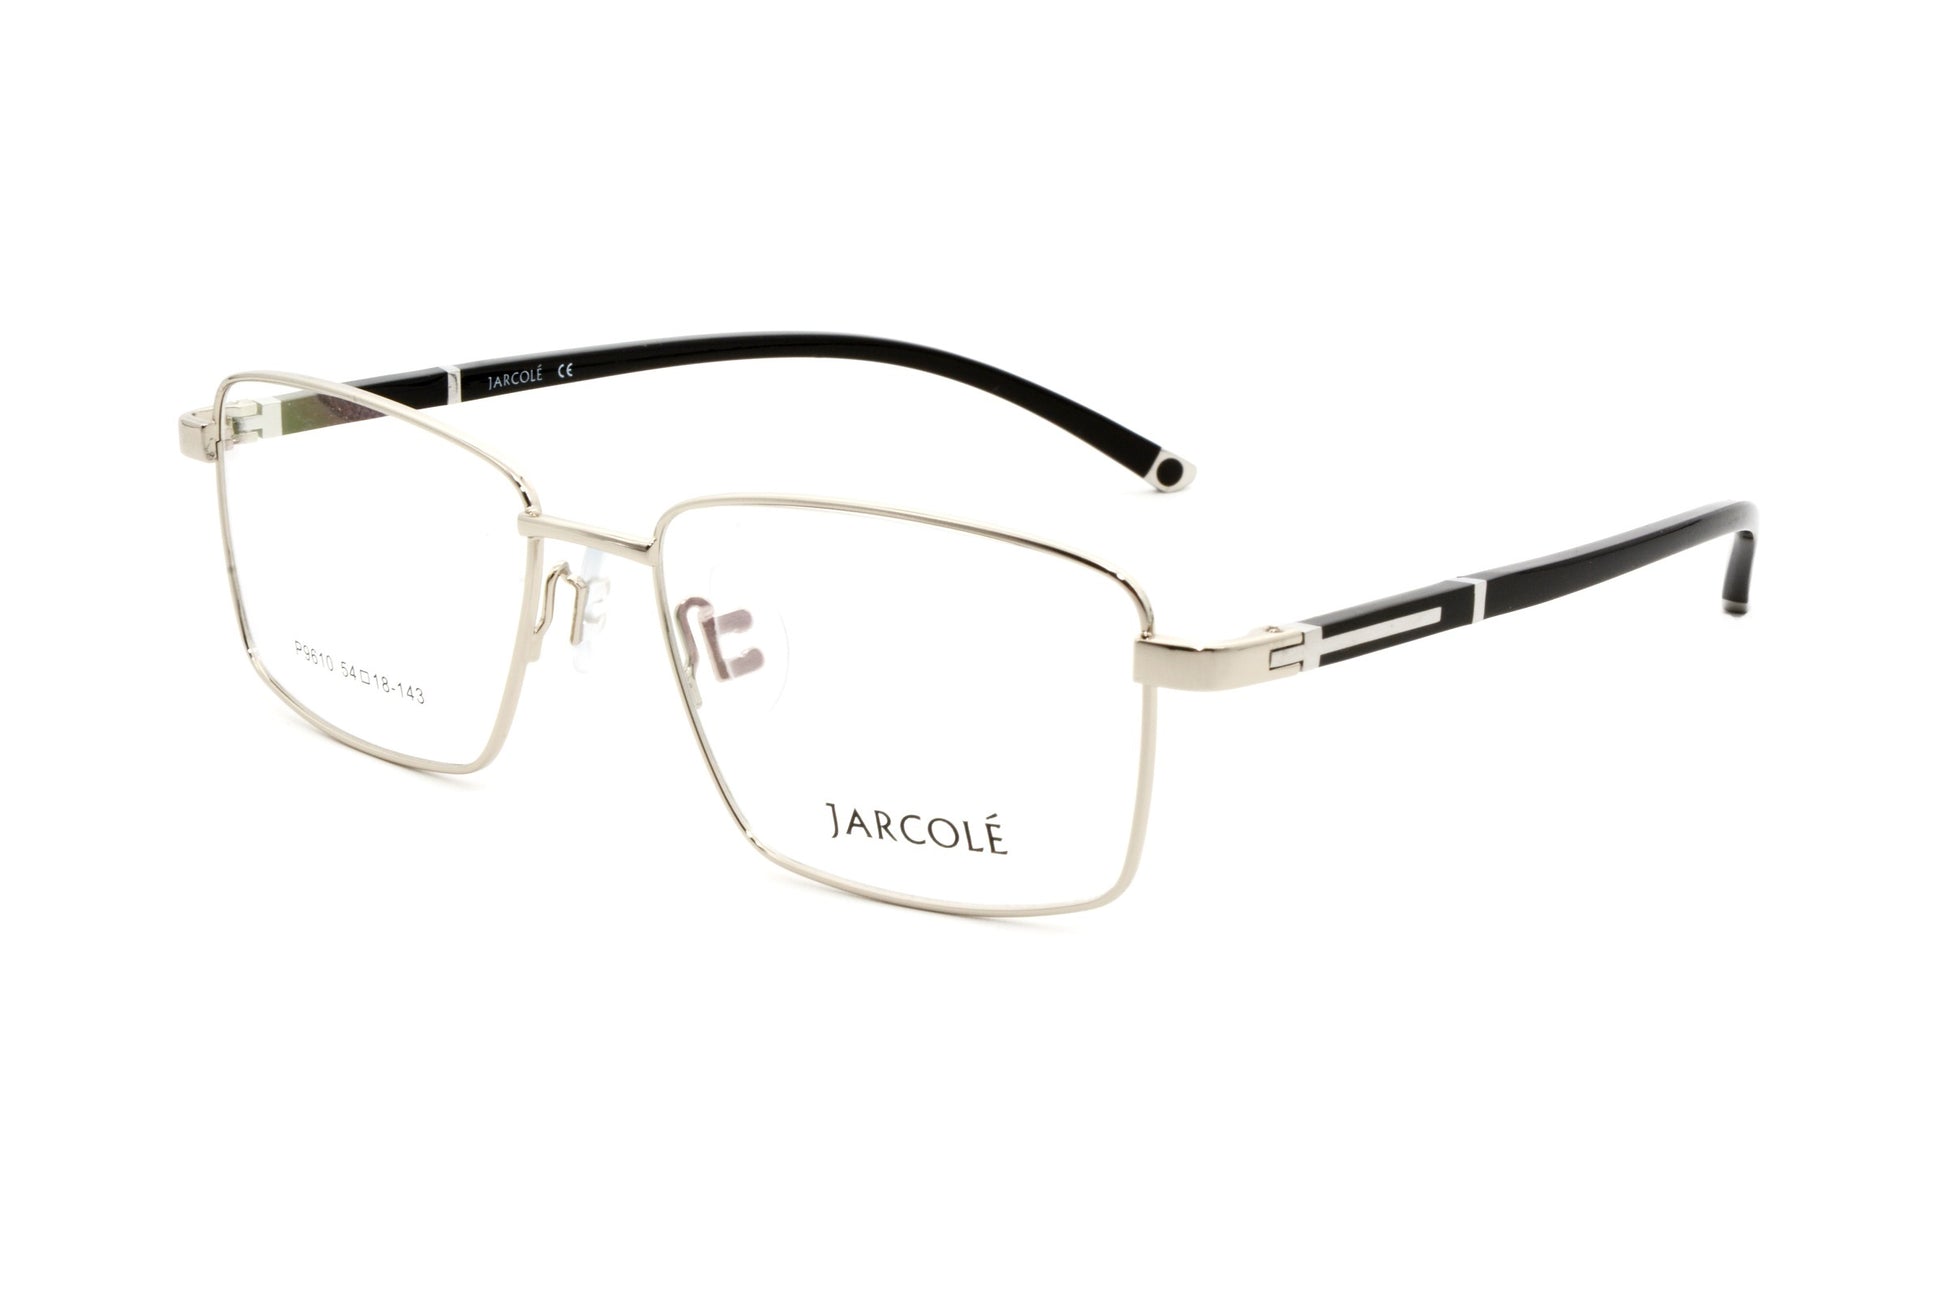 Jarcole eyewear JR P 9610 C3